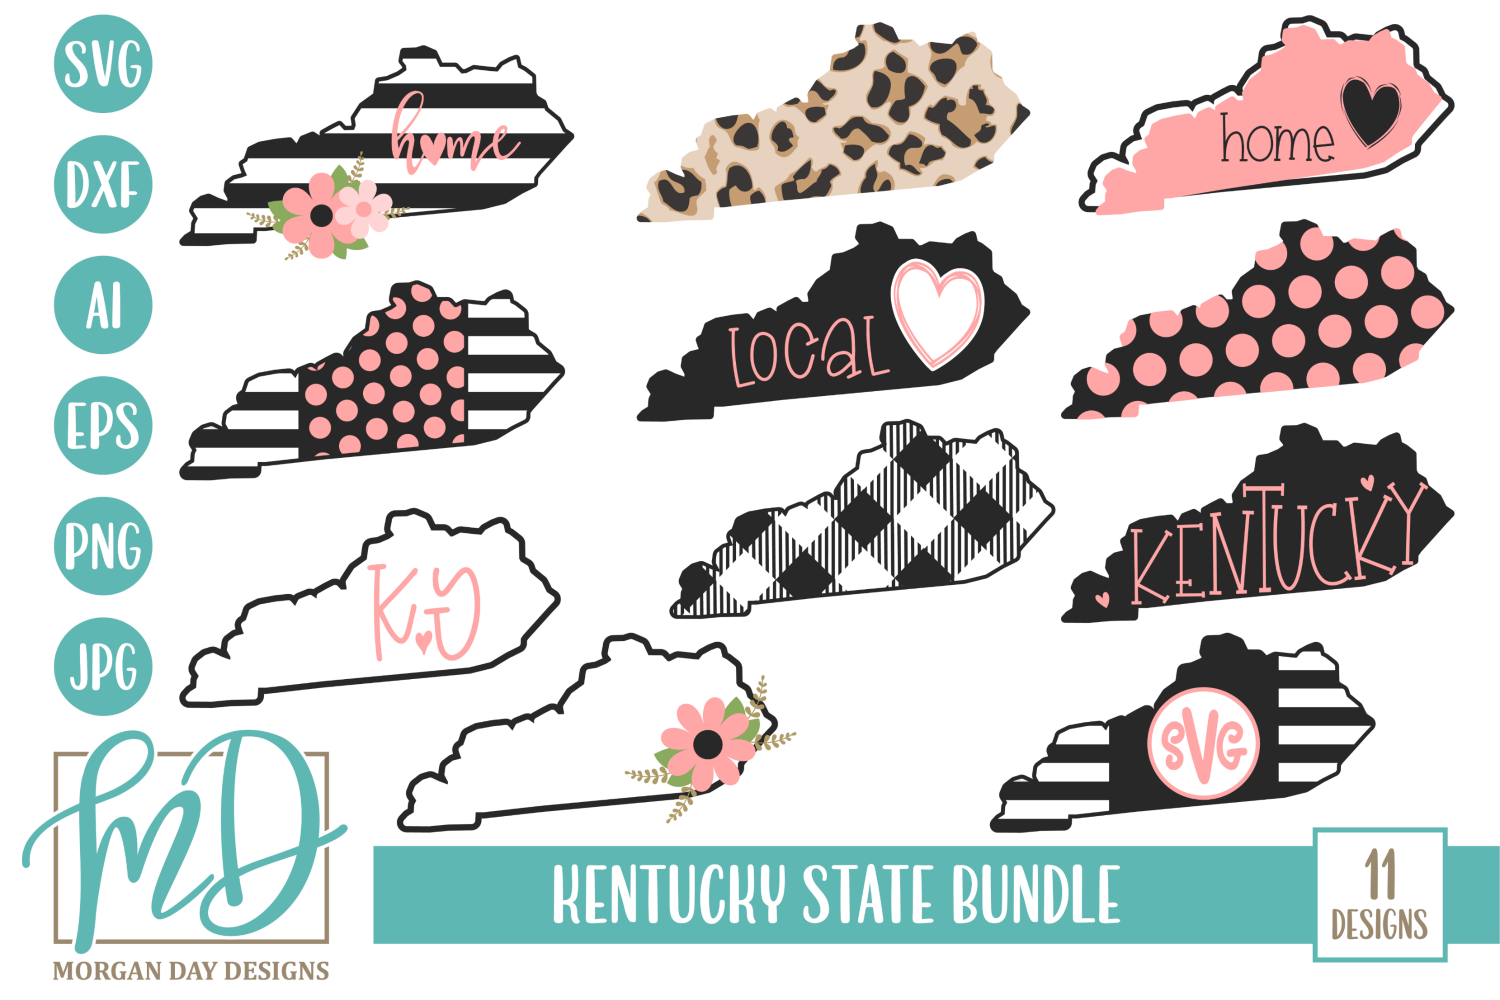 Download Kentucky Home - Kentucky State - Kentucky Bundle SVG